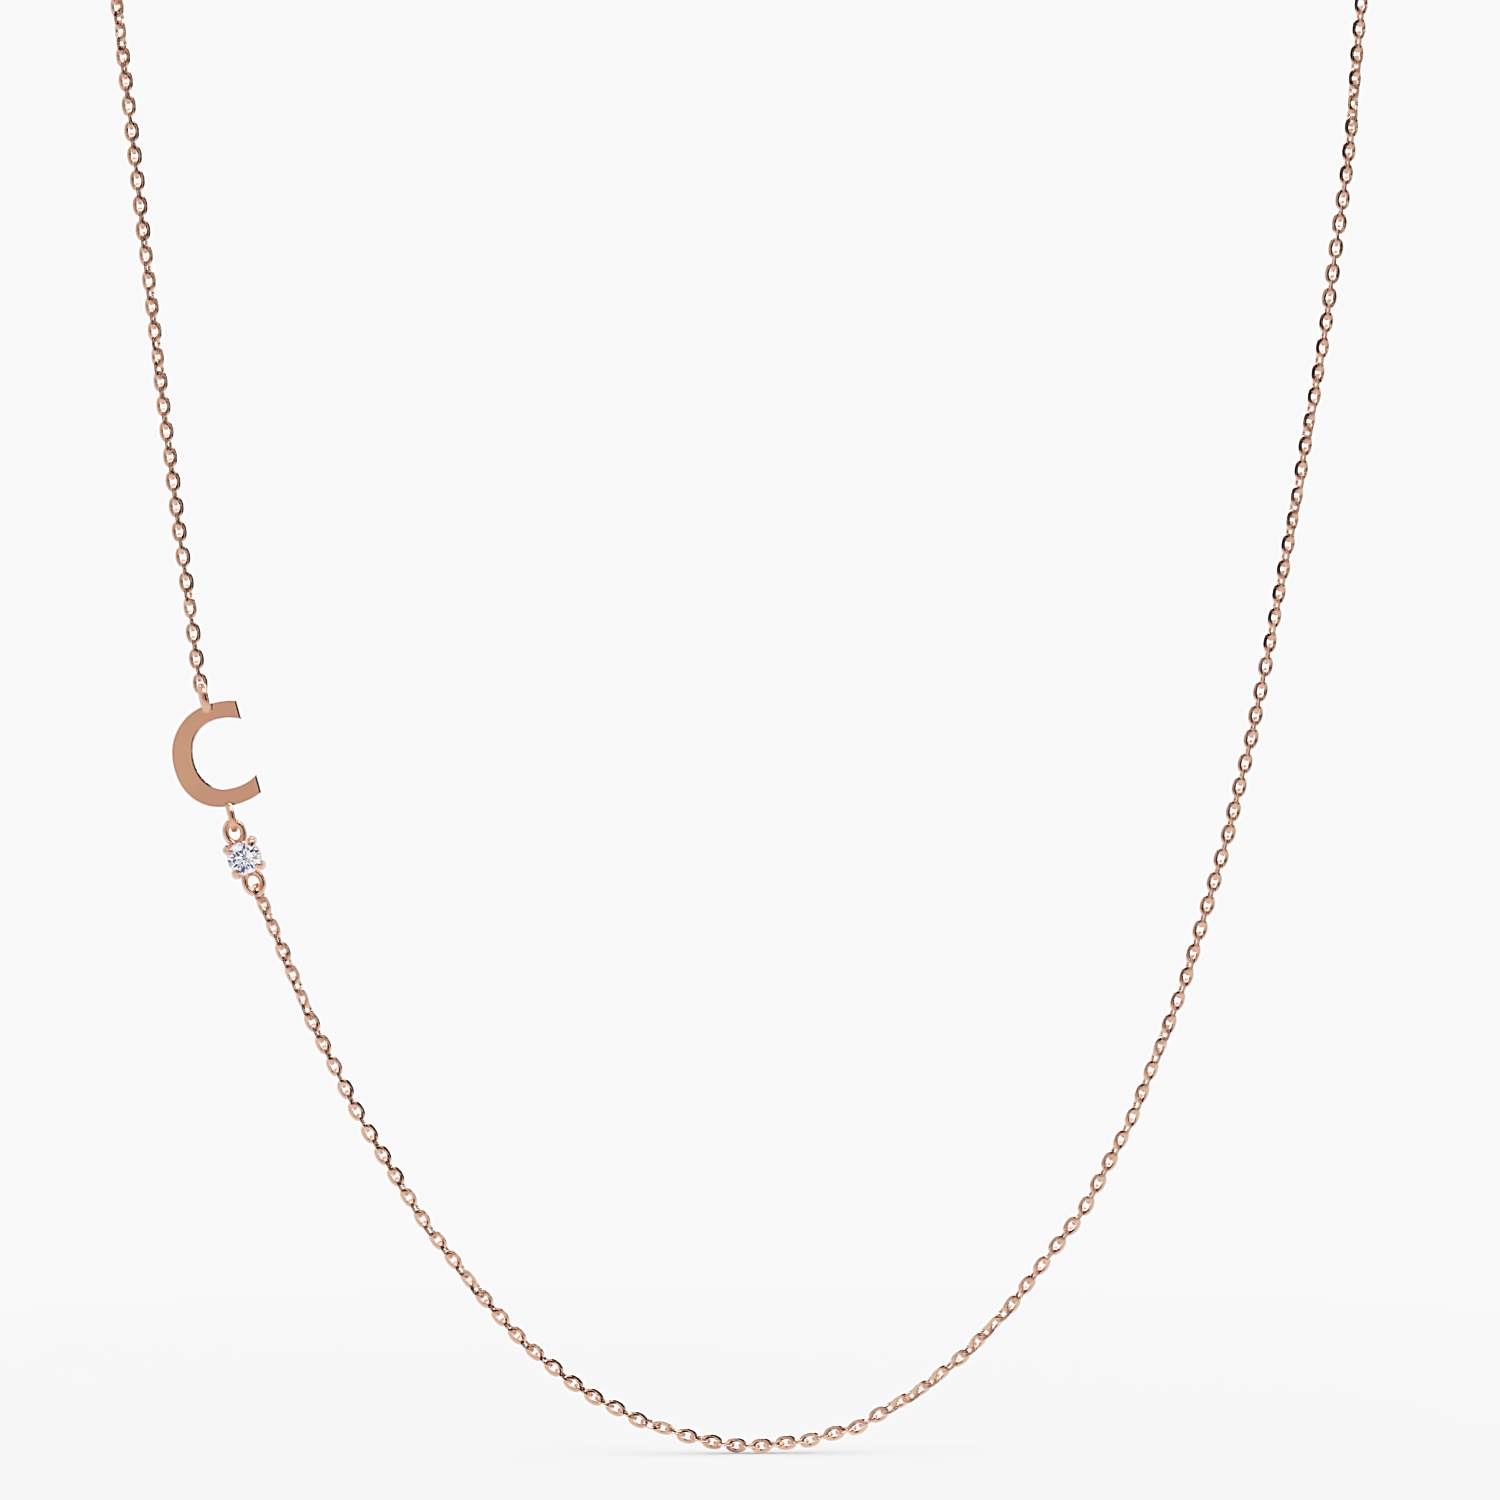 Sideways Initial C Necklace with Diamond